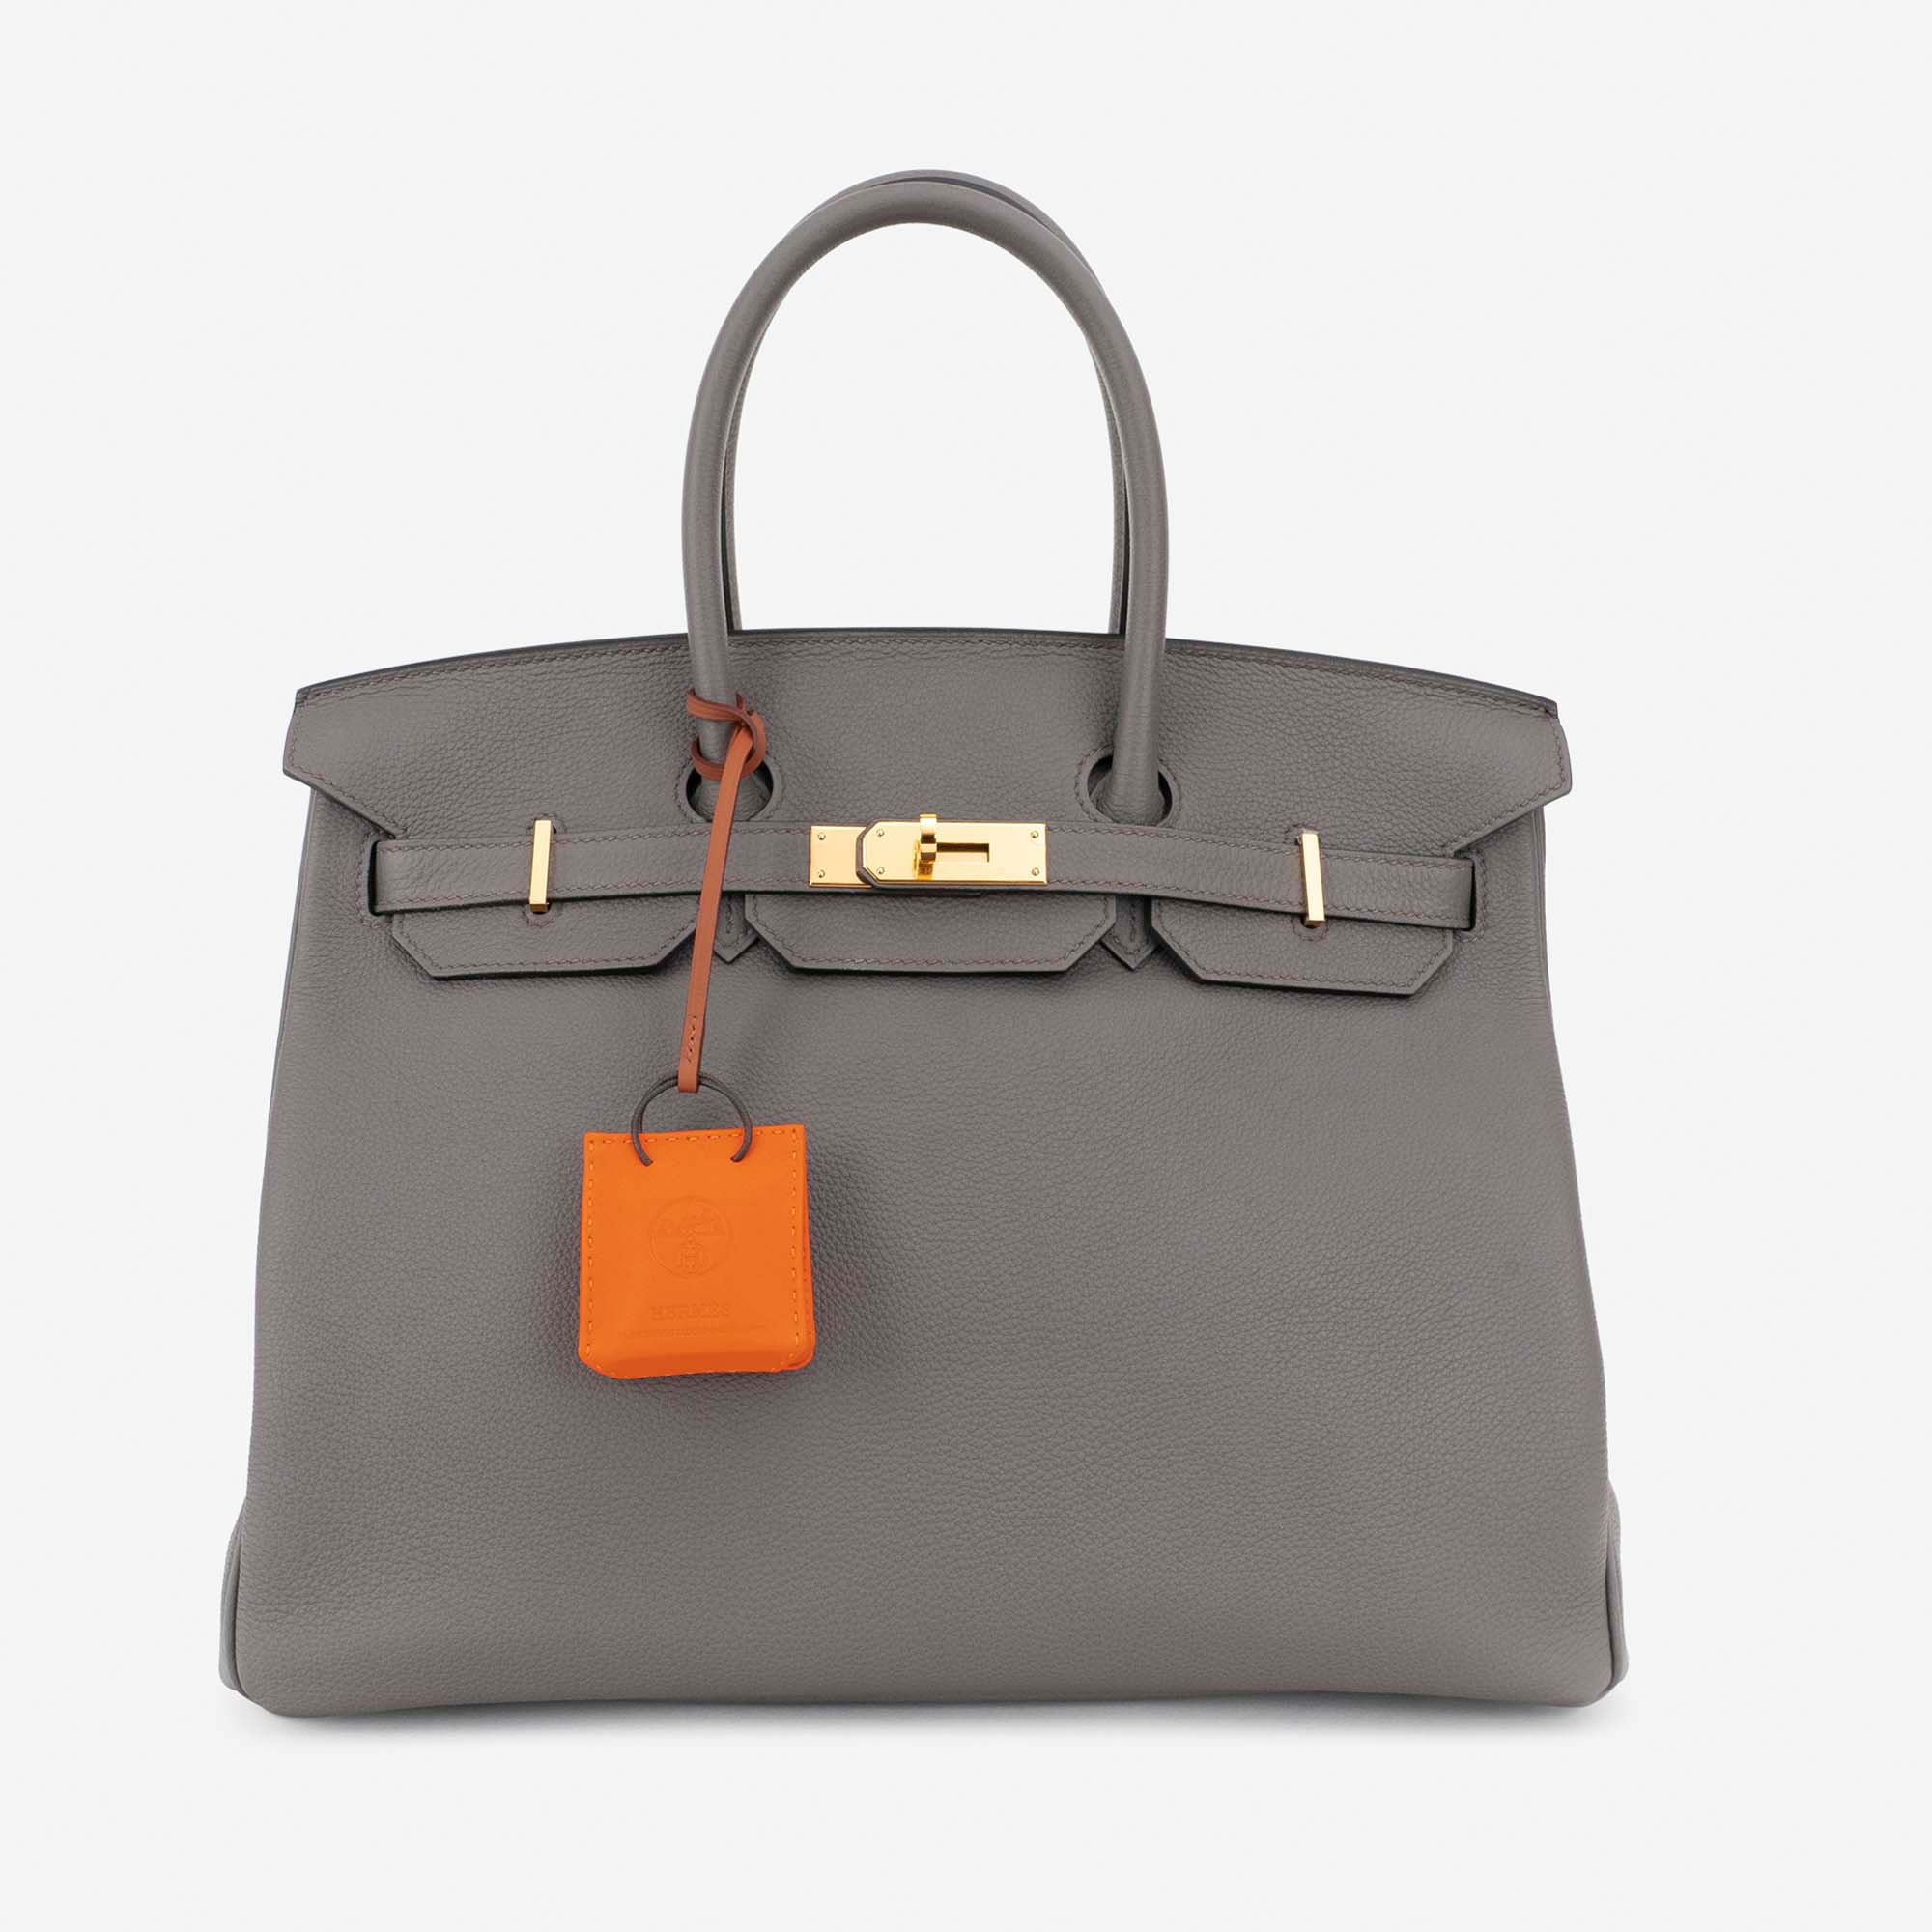 Hermès Bag Charm Feu / Gold